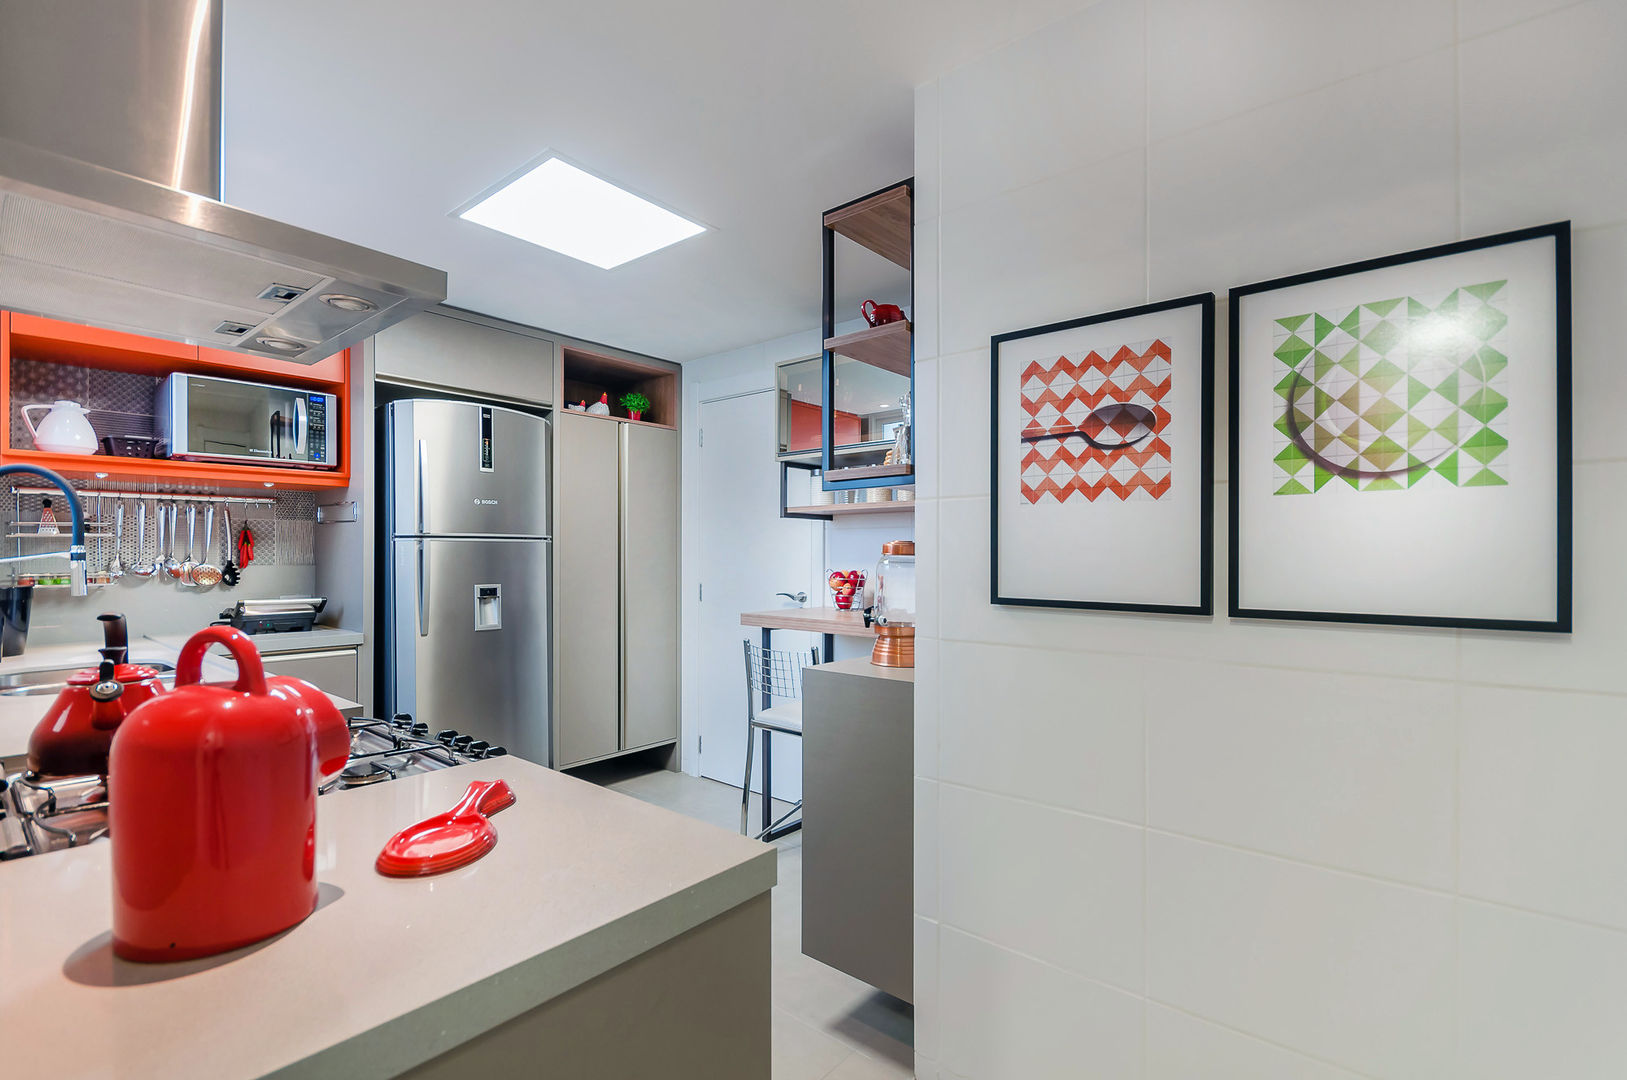 Cozinha Moderna, ME Fotografia de Imóveis ME Fotografia de Imóveis Modern kitchen Cabinets & shelves